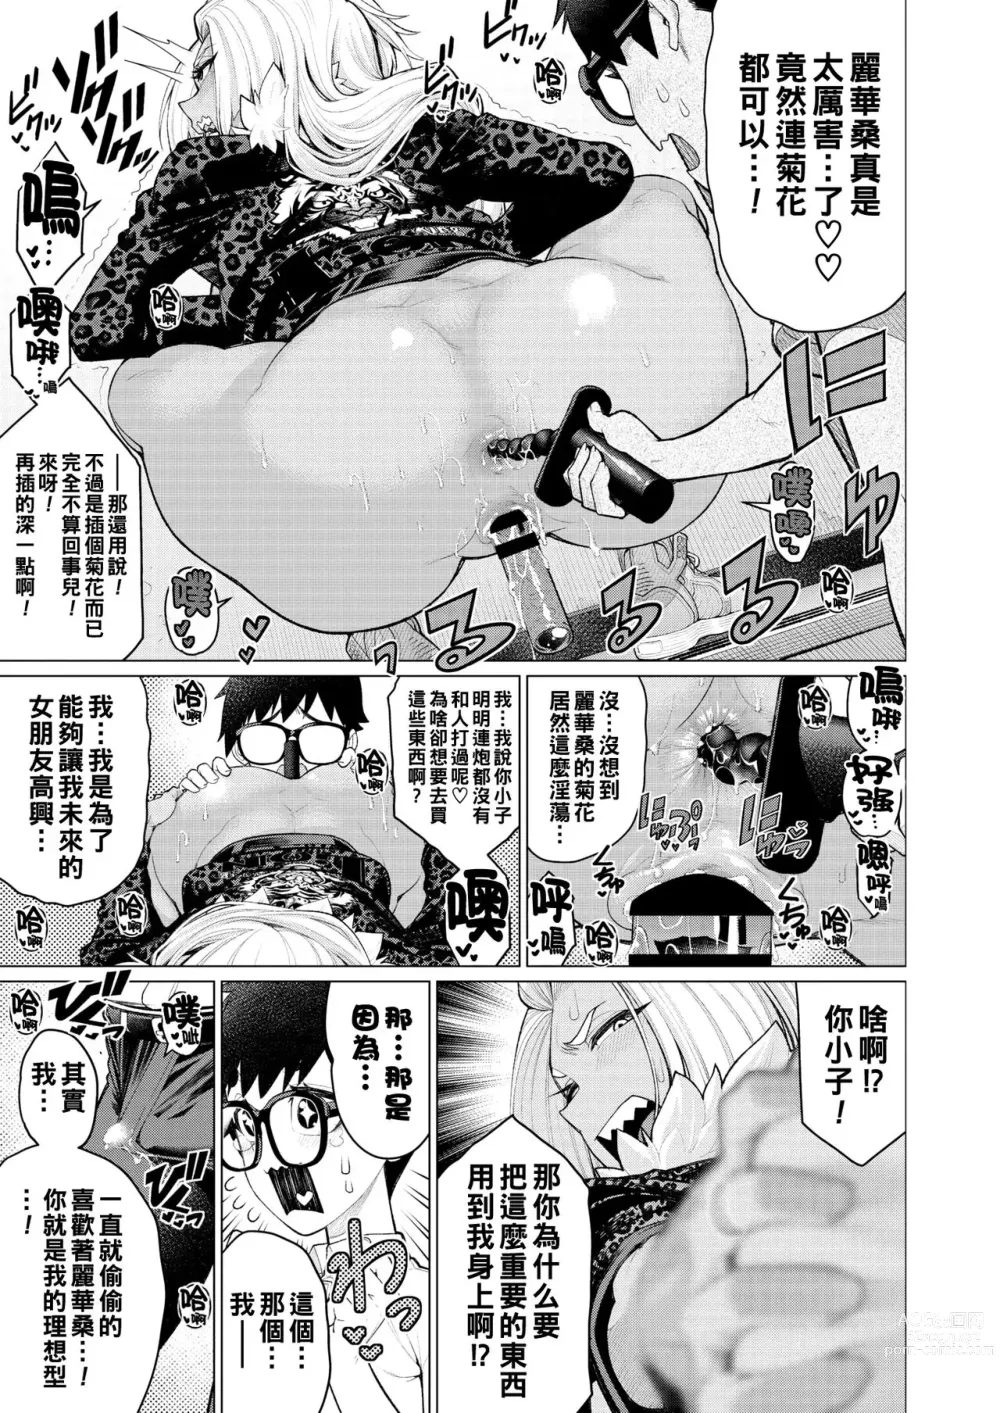 Page 9 of manga Dokidoki Ban YanMama